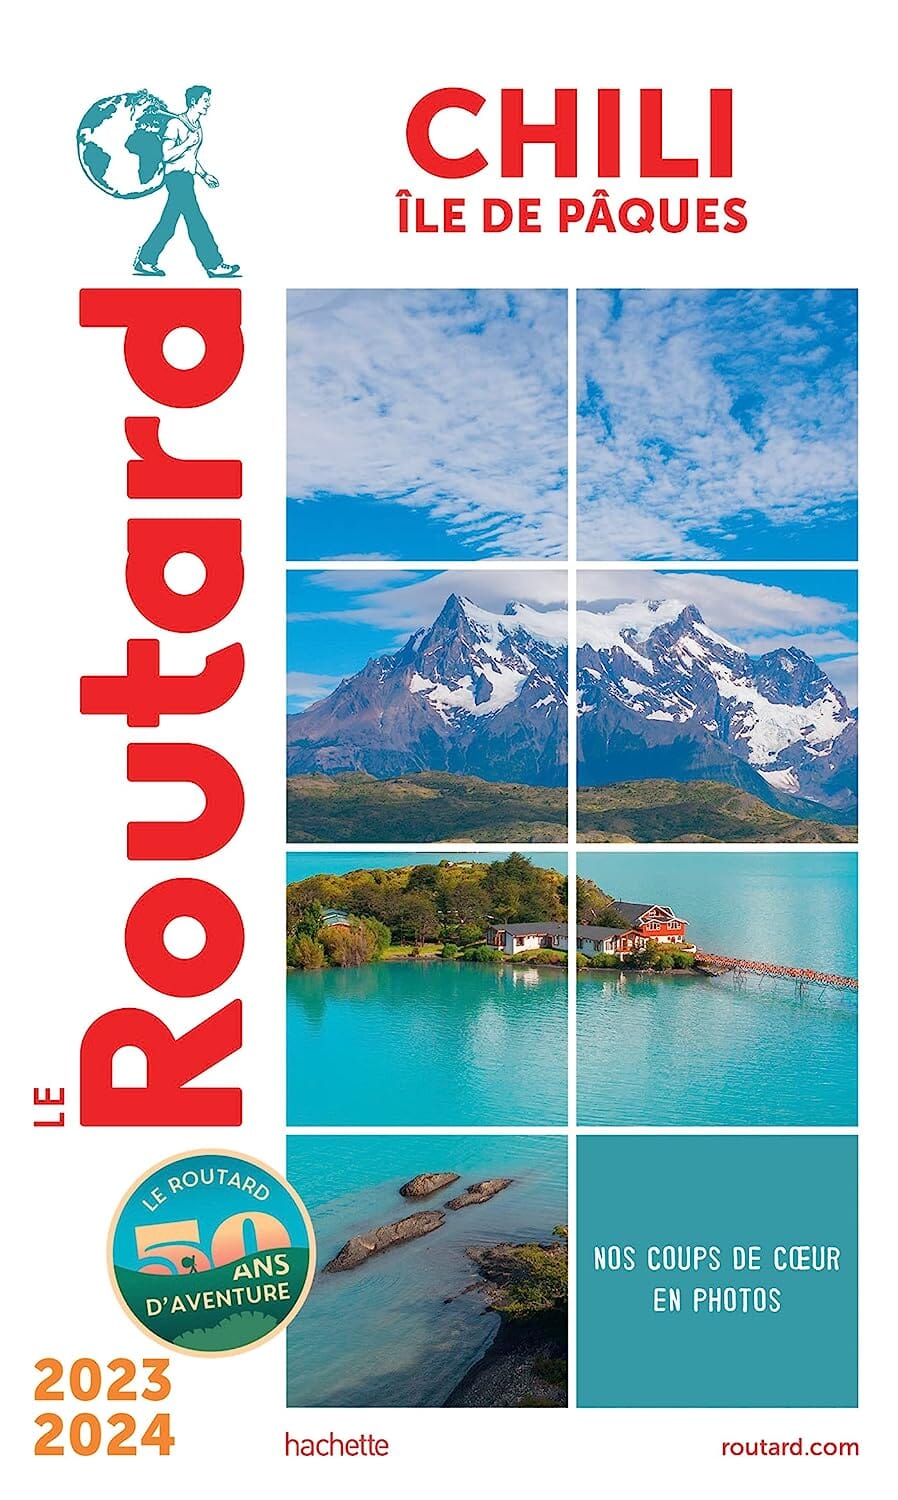 Guide du Routard - Chili & Ile de Pâques 2023/24 | Hachette guide de voyage Hachette 